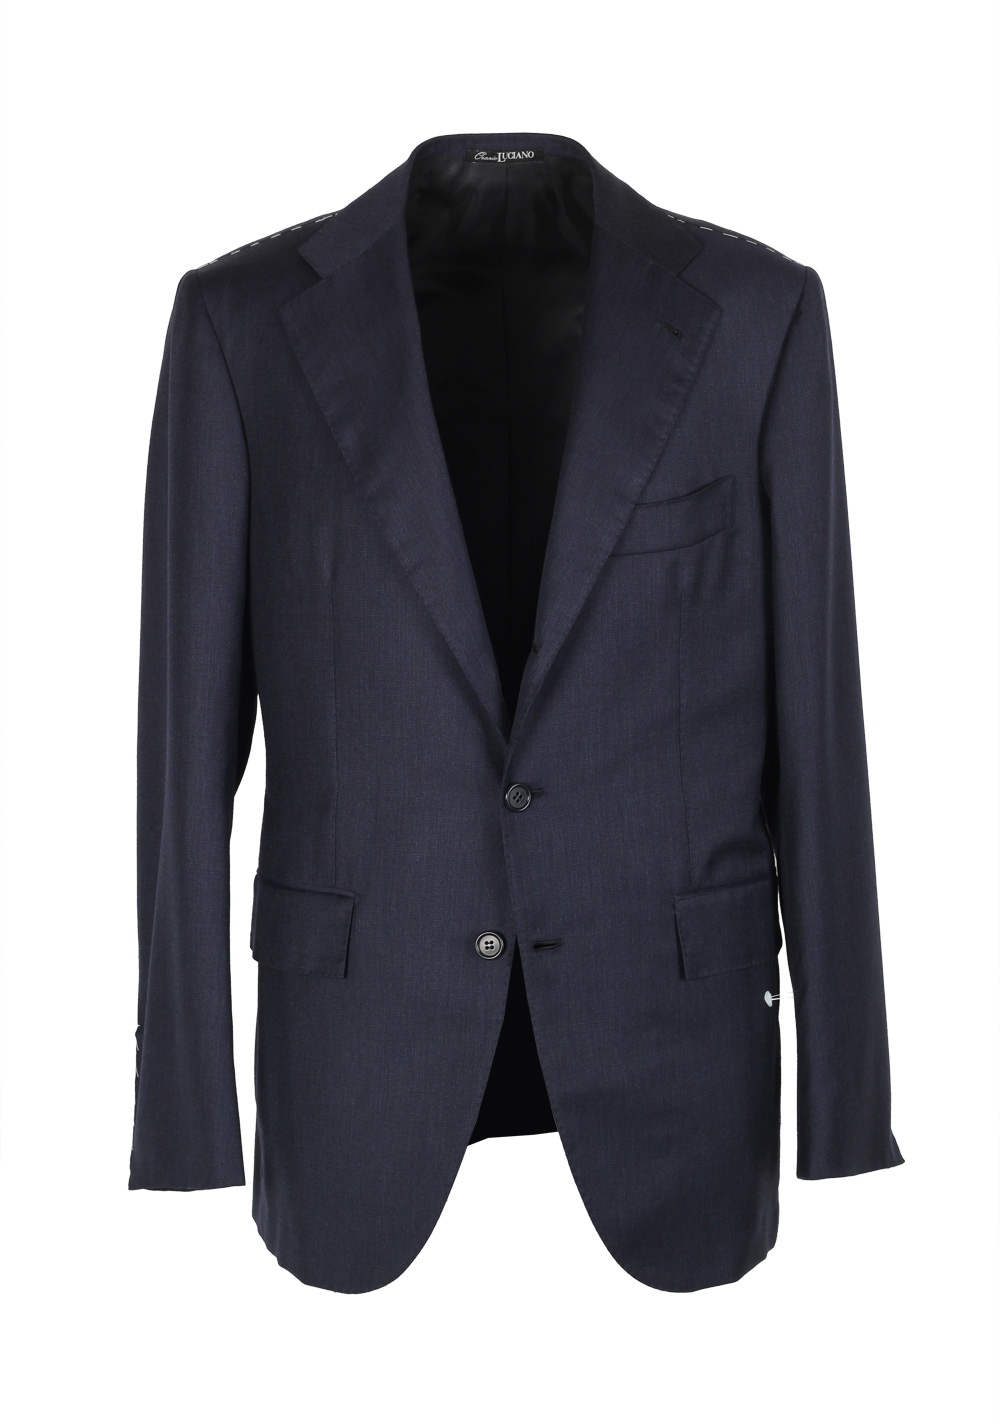 Orazio Luciano La Vera Sport Coat Size 48 / 38R U.S. Wool Cashmere ...